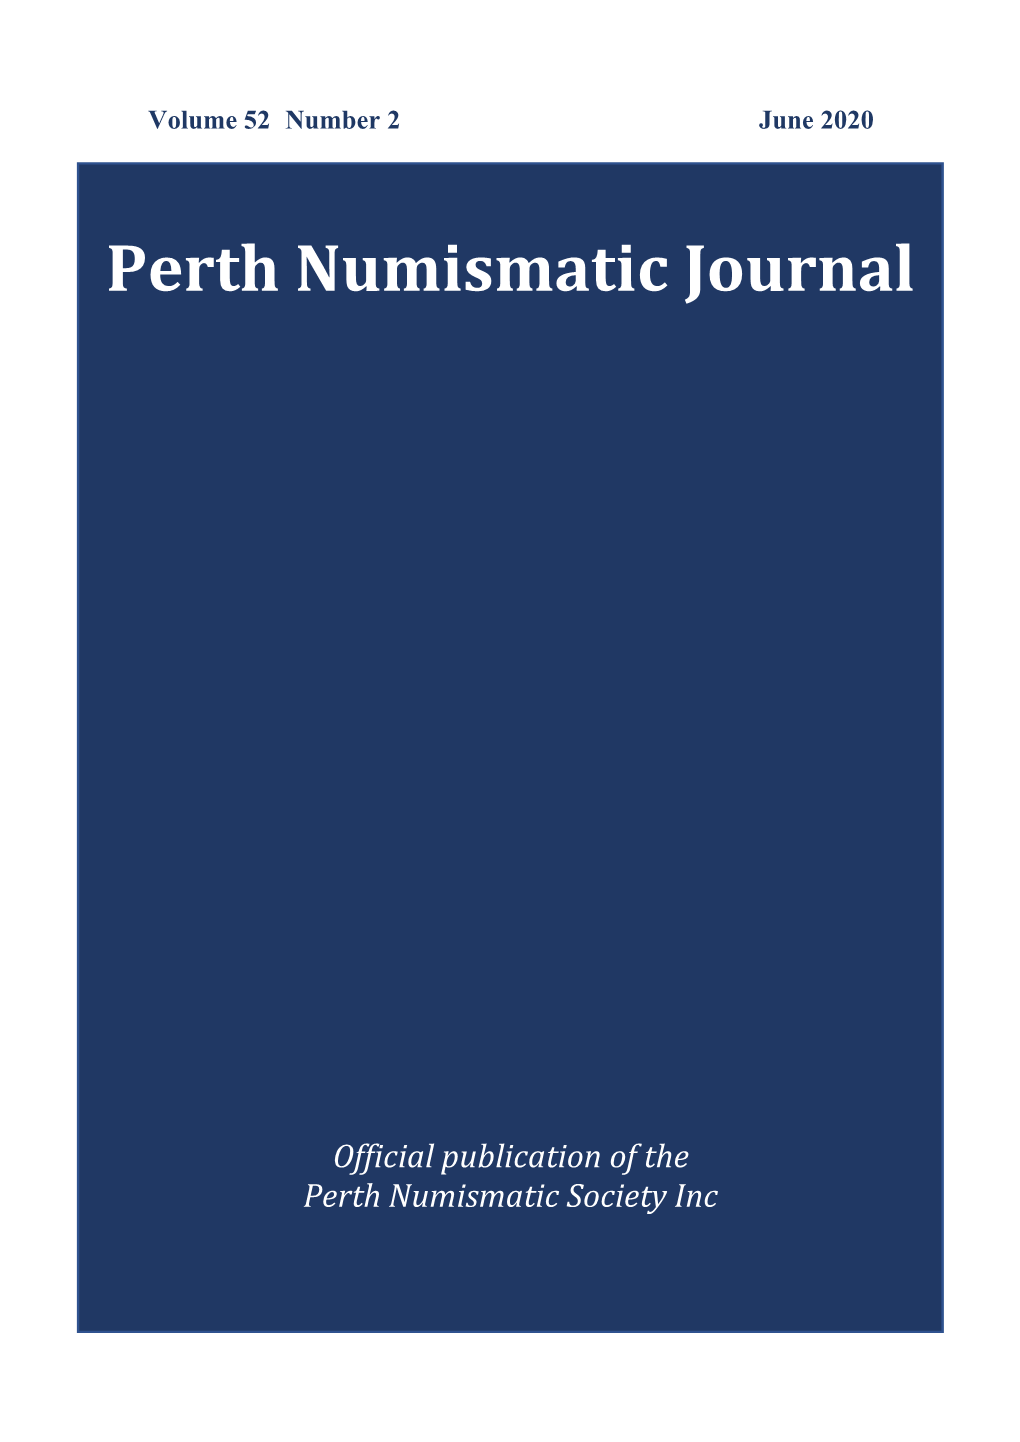 PNS Journal Vol 52 No 2 June 2020